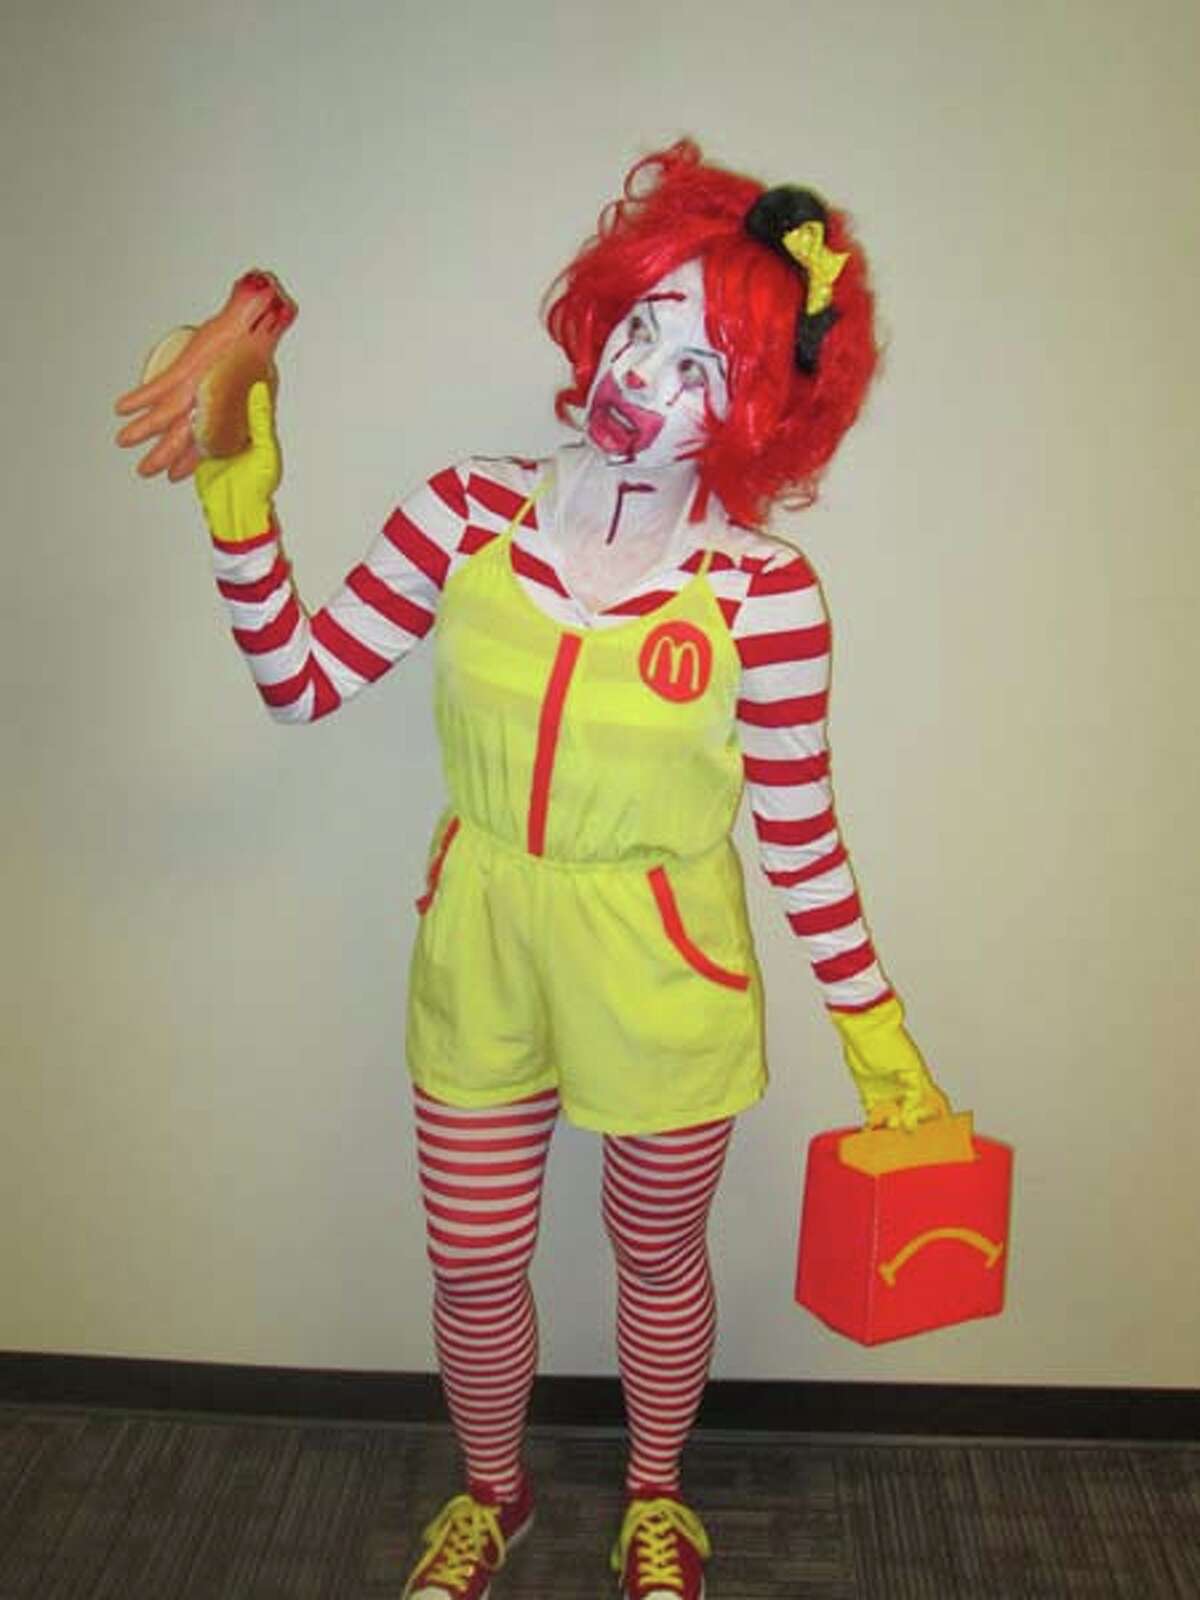 I'm Ronald McDonald holding a handburger and un-happy meal. 